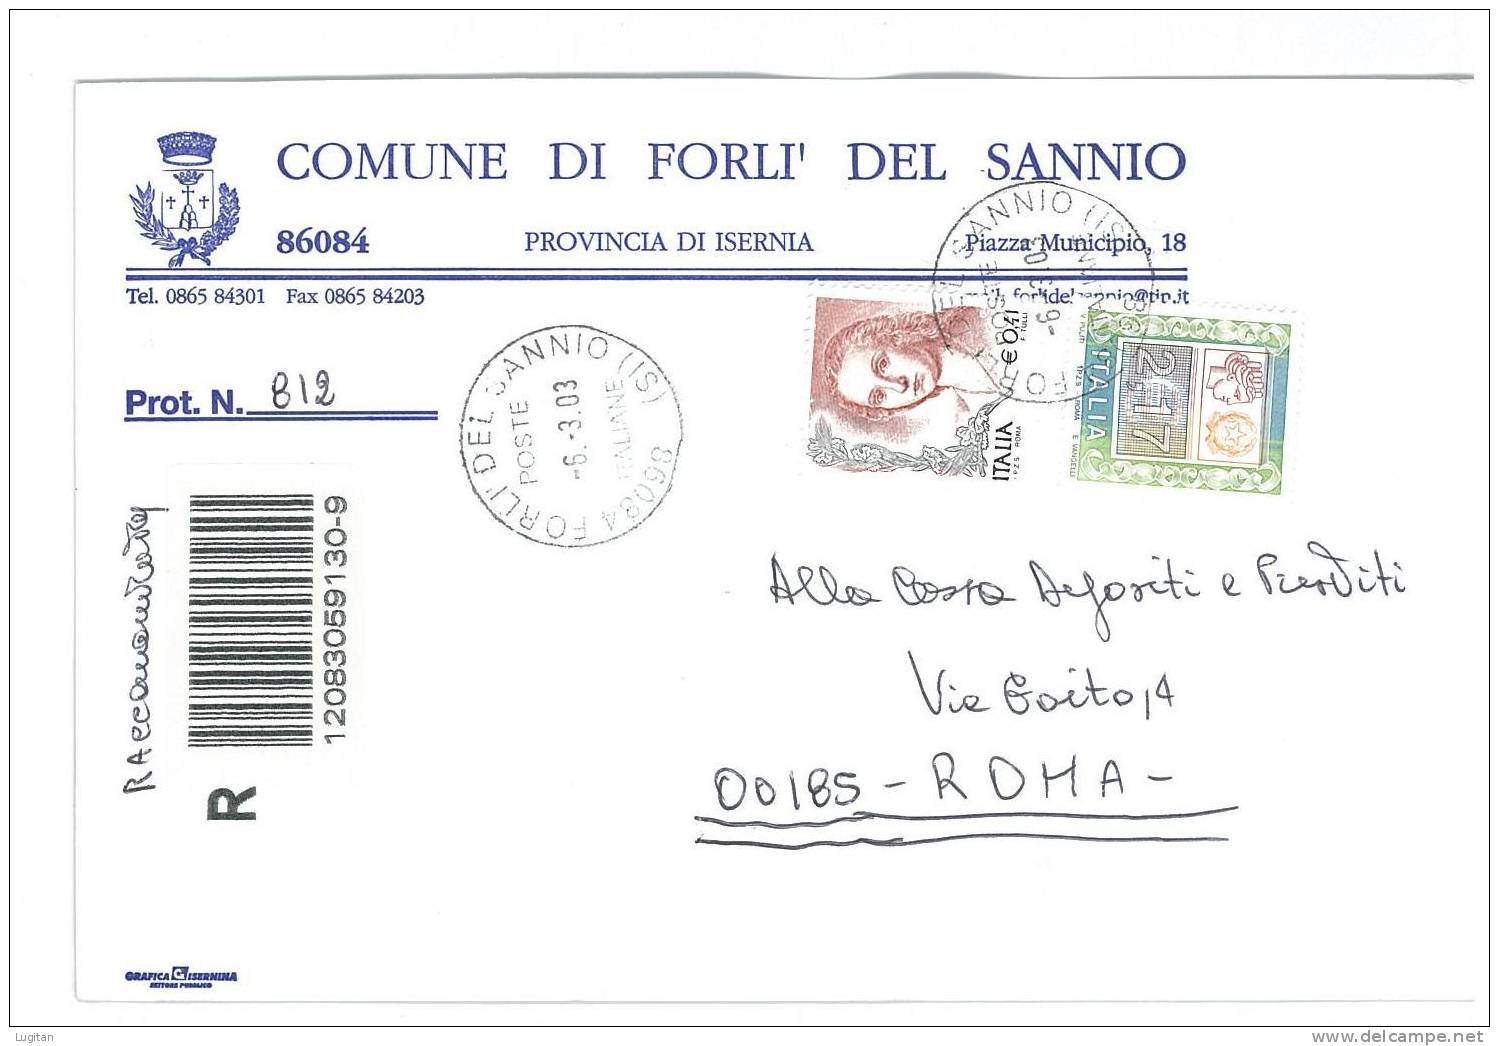 FORLI' DEL SANNIO CAP 86084  ISERNIA  - ANNO 2003  IS - R  - MOLISE -TEMATICA COMUNI D'ITALIA - STORIA POSTALE - Macchine Per Obliterare (EMA)